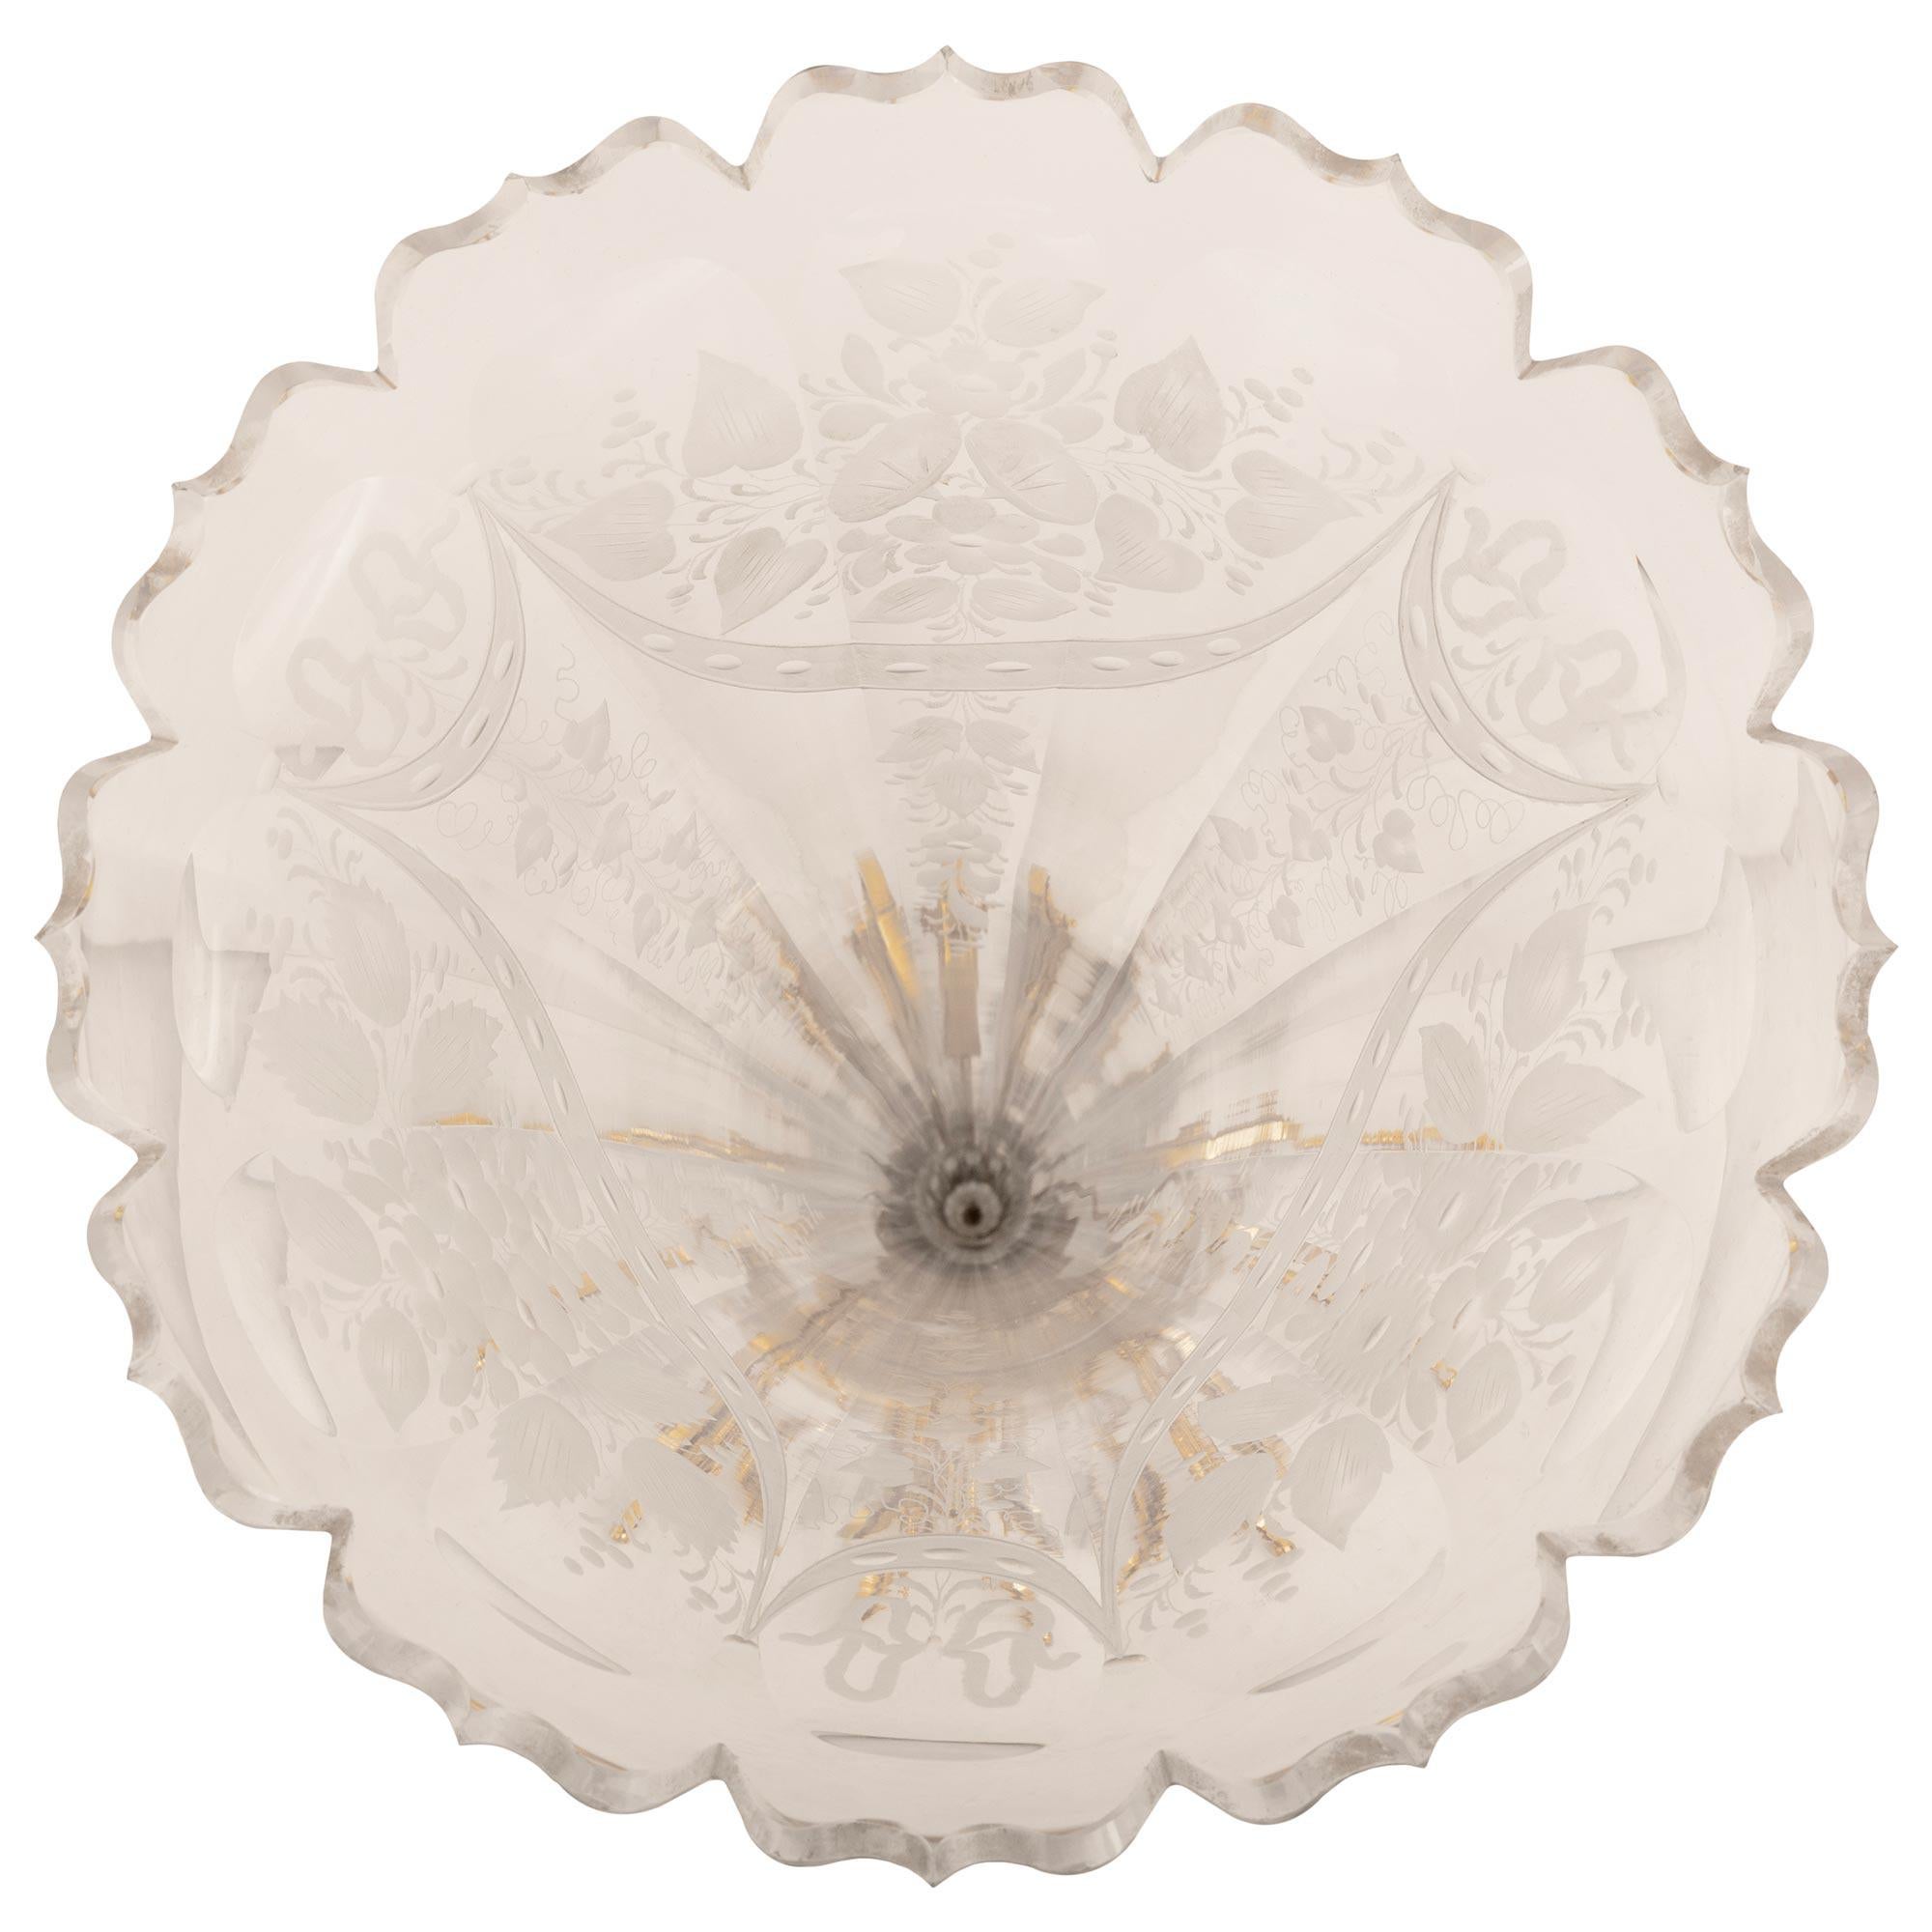 Eine elegante französische Vase aus der Jahrhundertwende aus Louis XVI st. Baccarat Kristall und Ormolu montiert. Die Vase steht auf einem verschnörkelten Dreibeinsockel über kleinen Ormolukugelfüßen. Der verschnörkelte Sockel ist außerdem mit